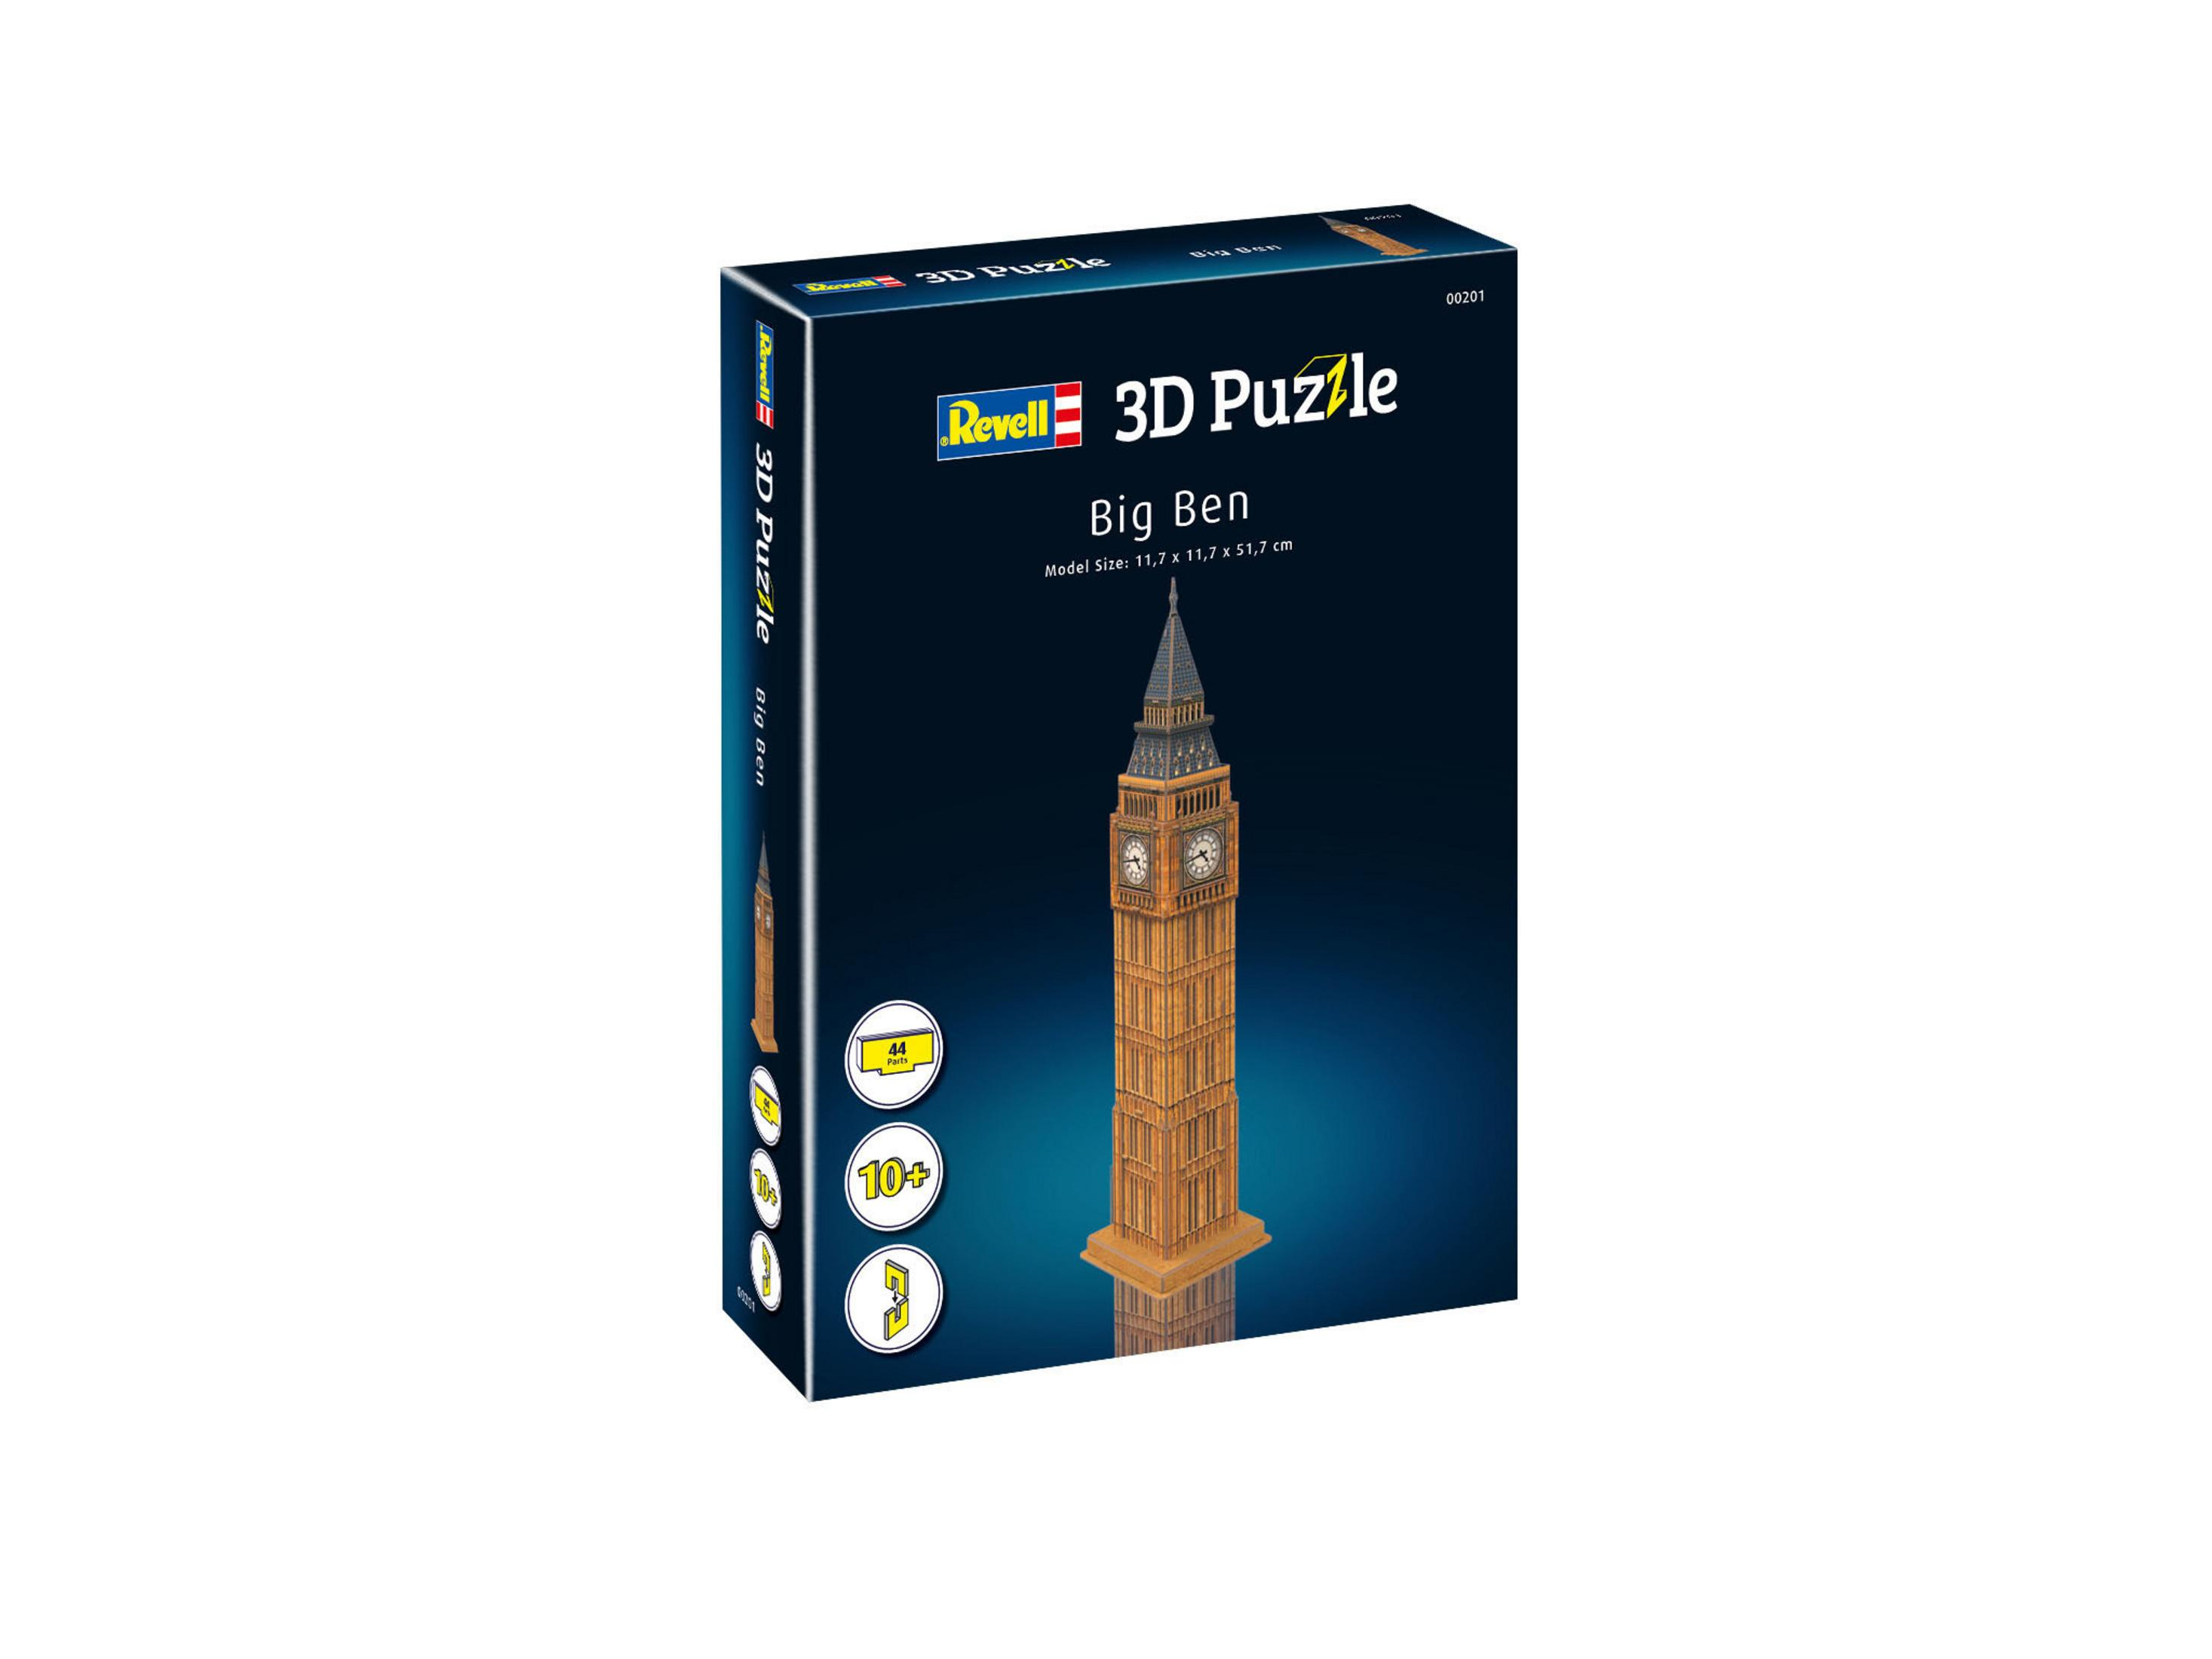 00201 Puzzle, BIG Mehrfarbig REVELL 3D BEN